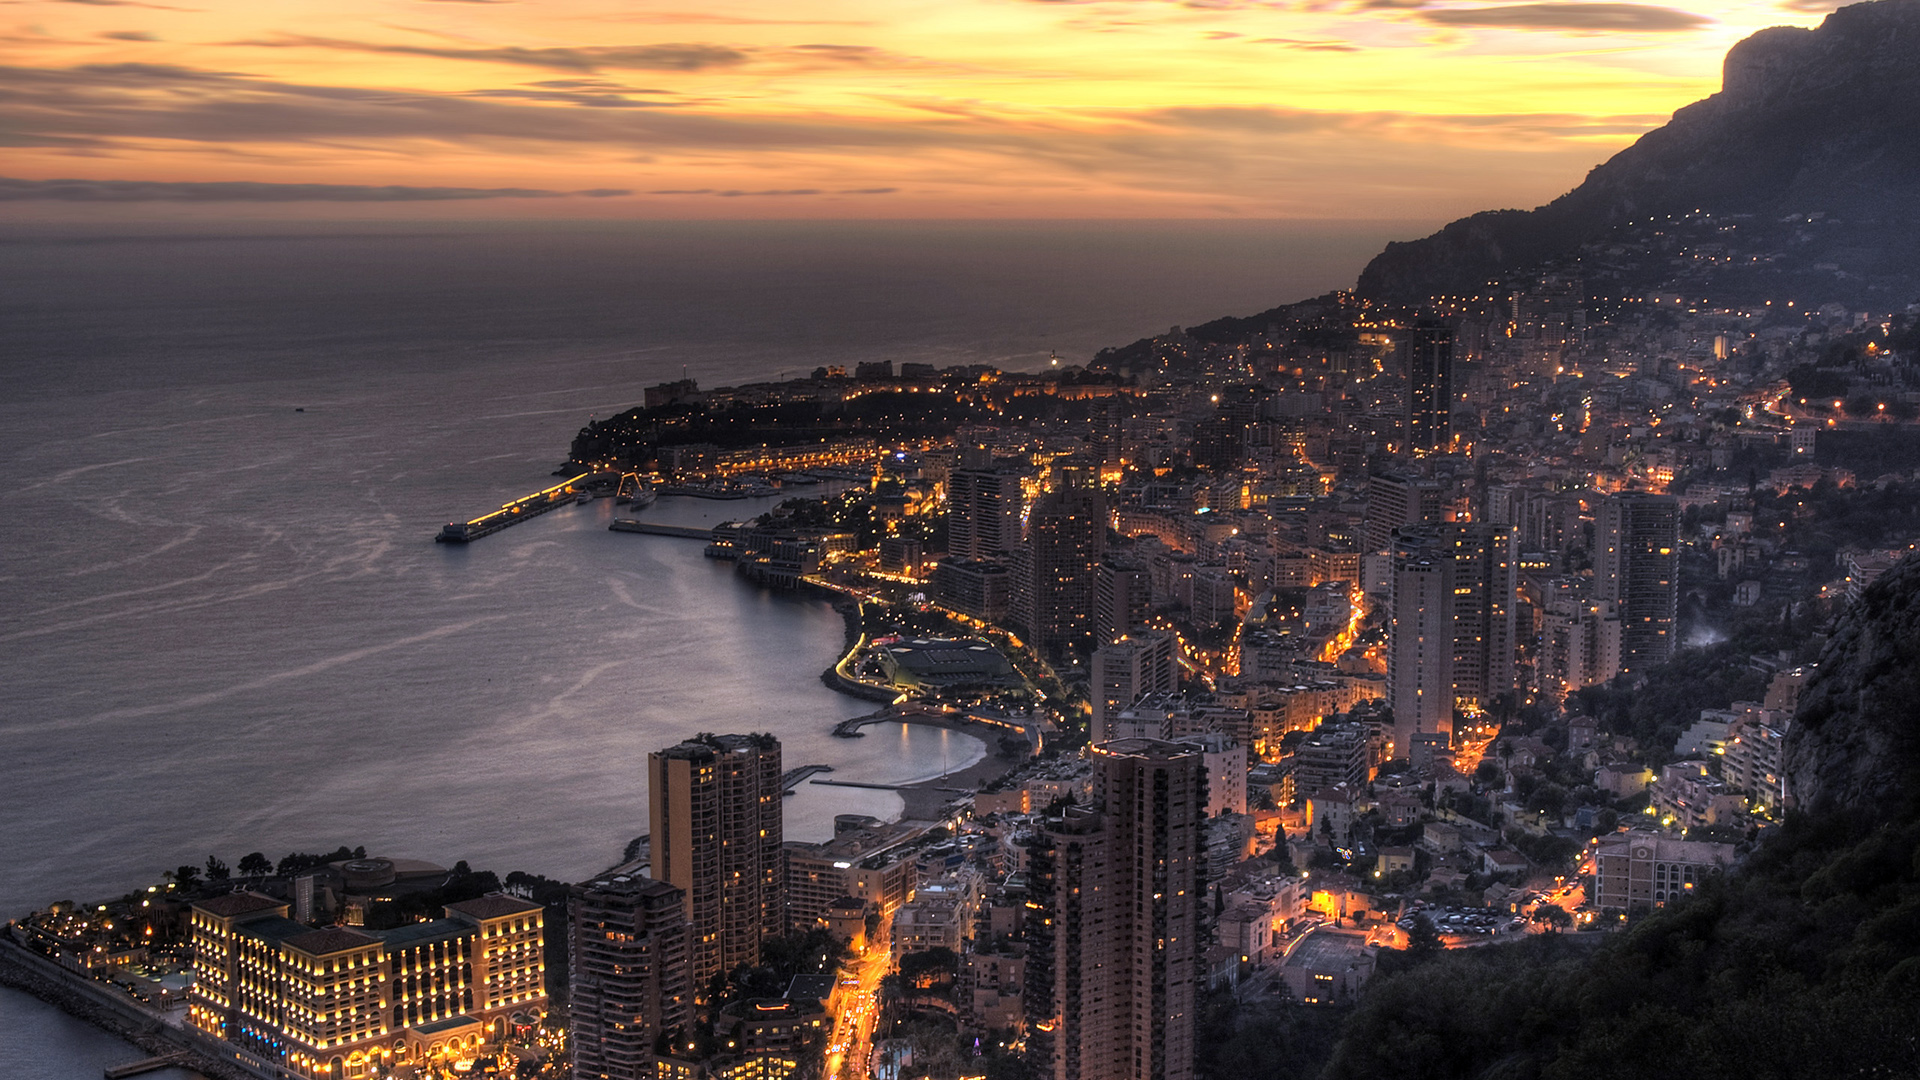 Скачать обои бесплатно Города, Монако, Сделано Человеком картинка на рабочий стол ПК